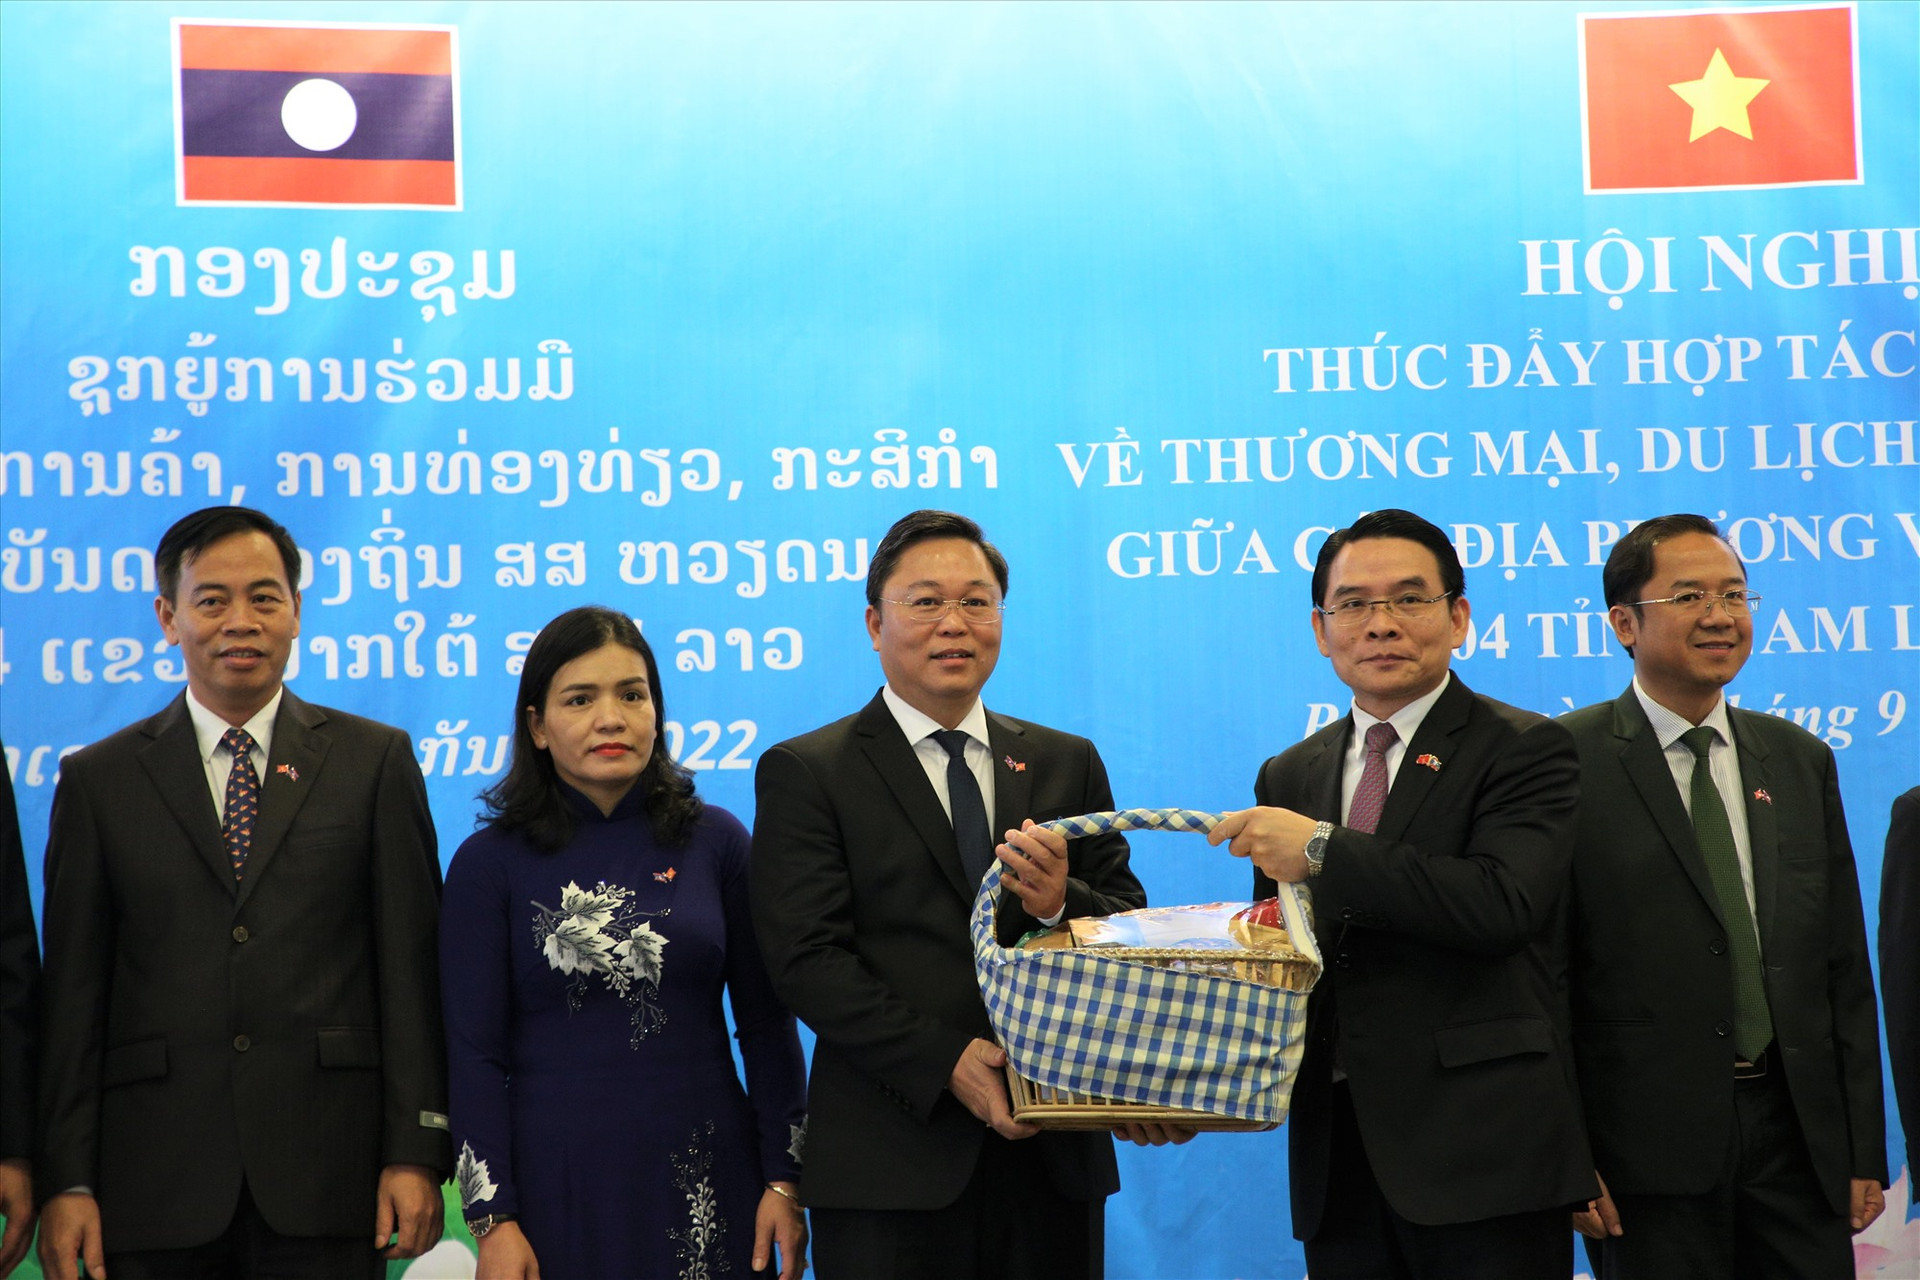 Chủ tịch UBND tỉnh Lê Trí Thanh nhận quà từ lãnh đạo tỉnh Chămpasak. Ảnh: A.N